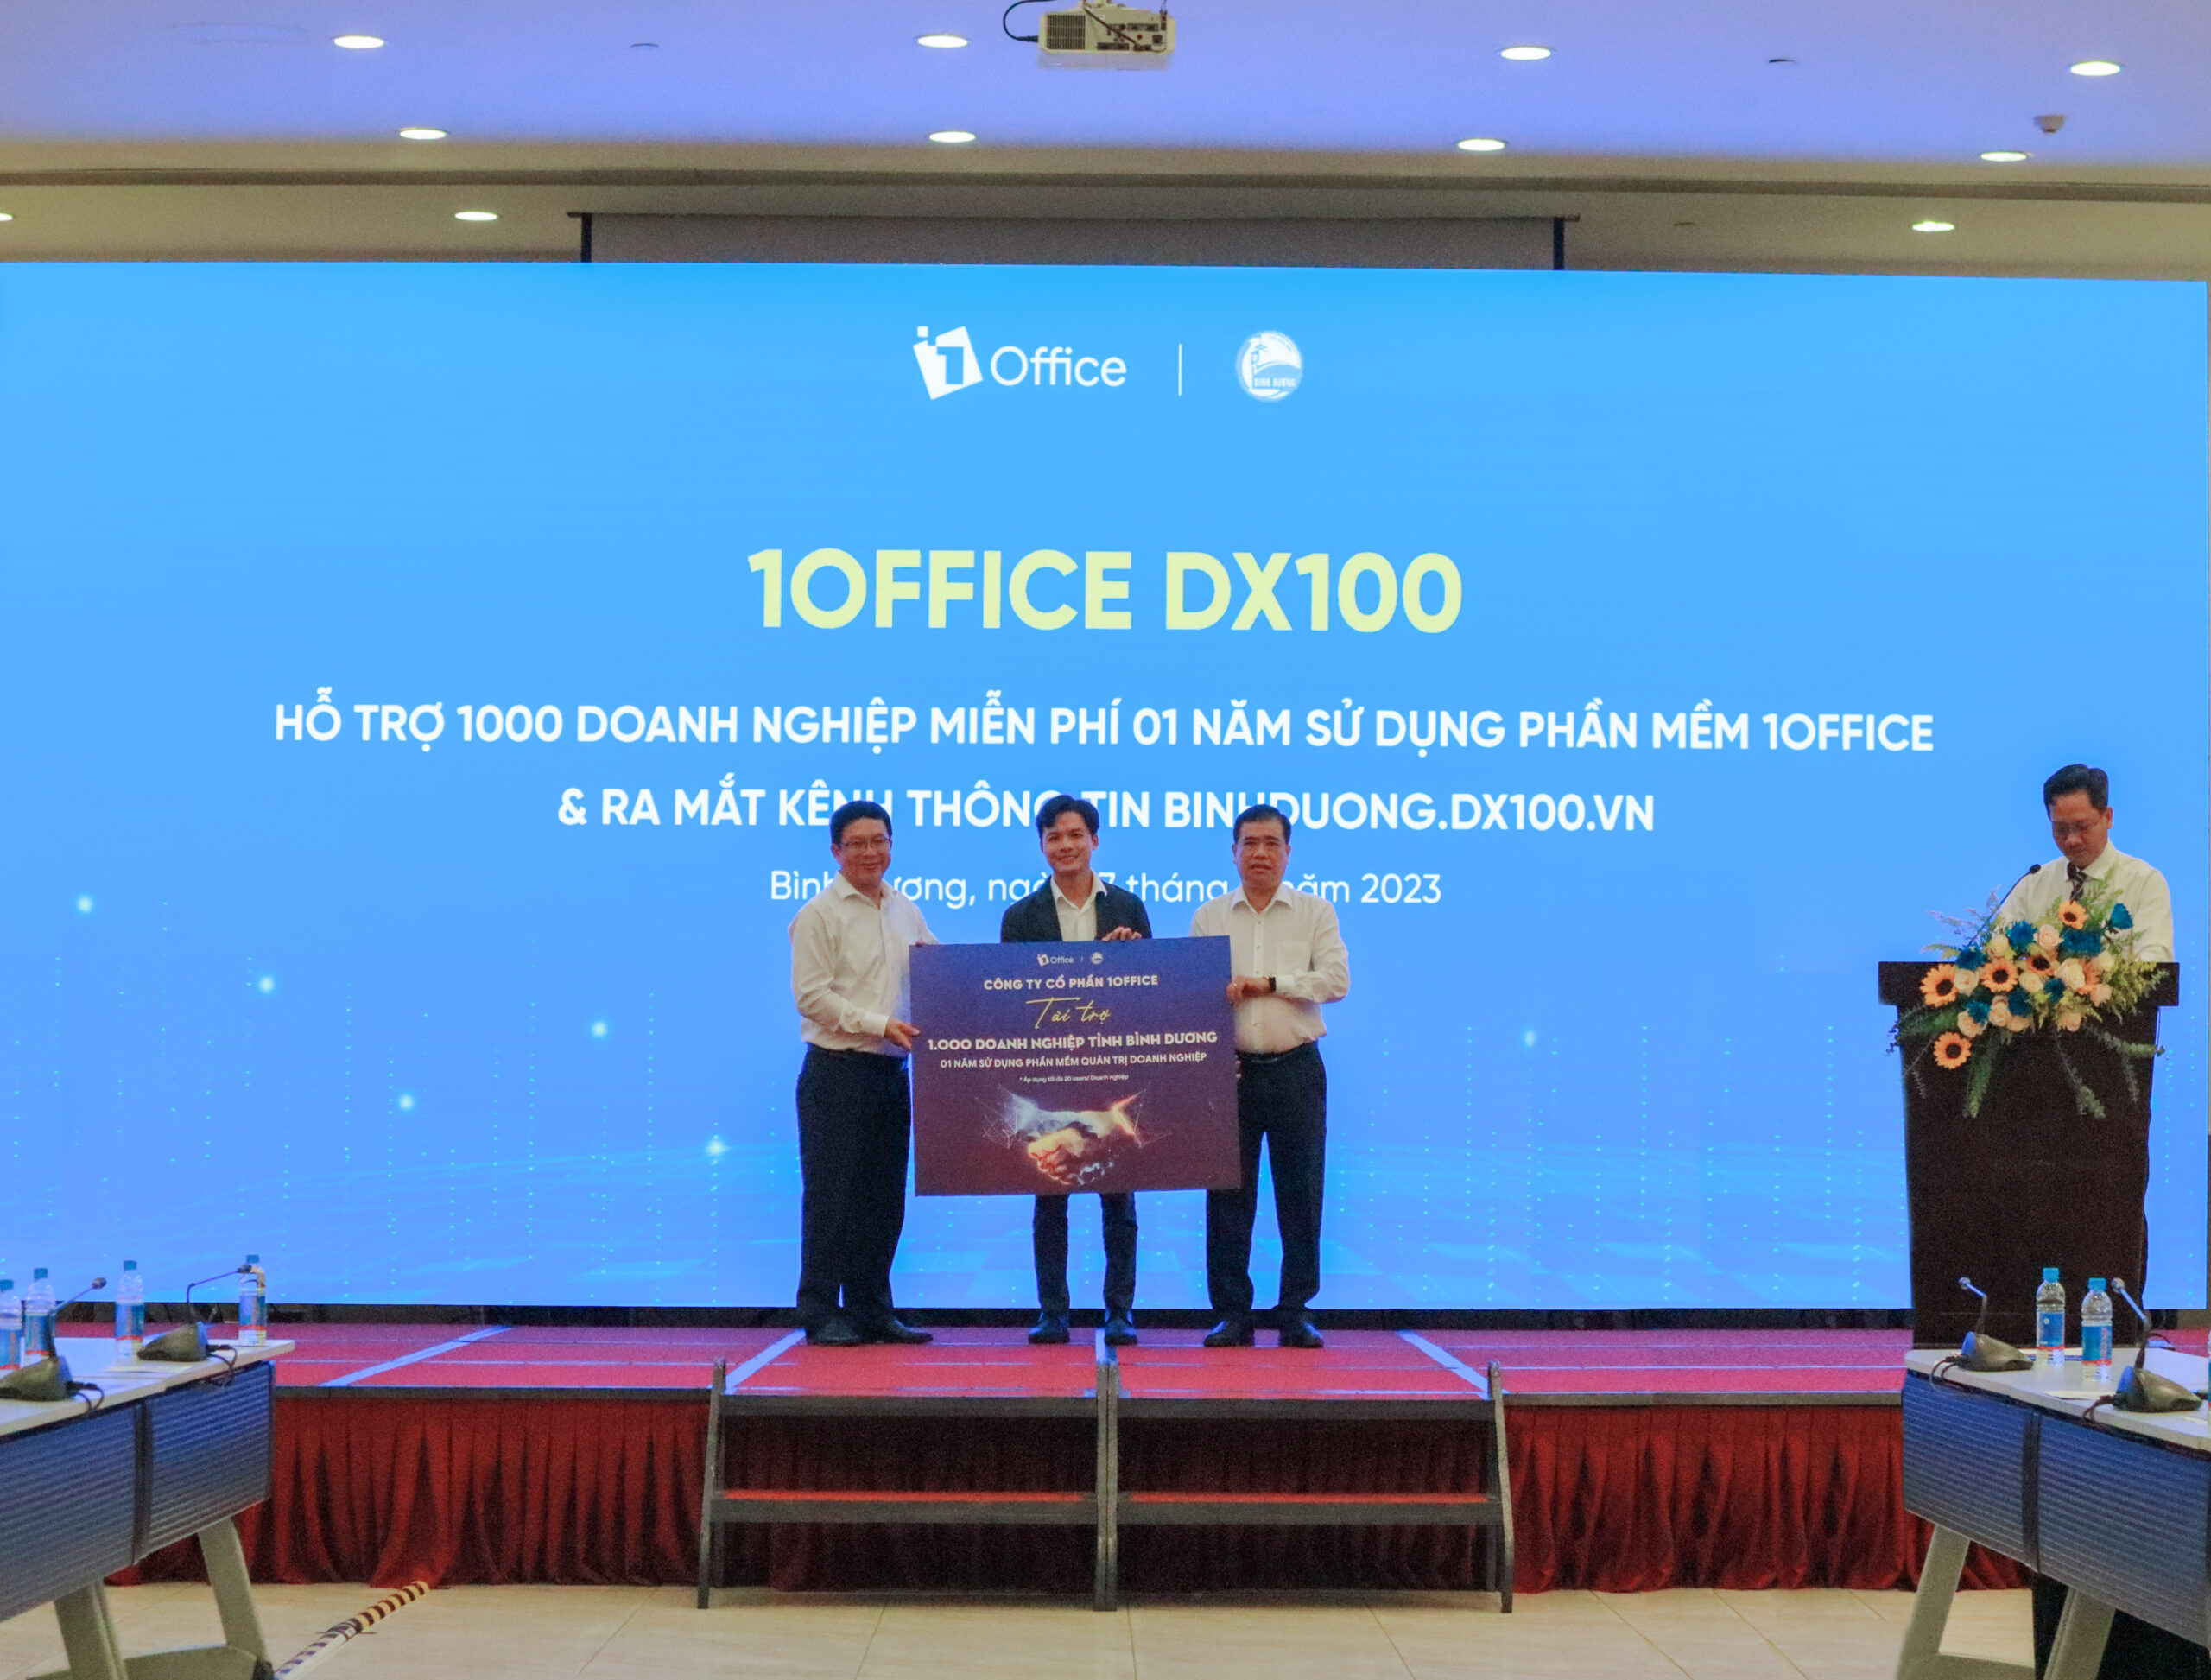 1Office hợp tác với Sở Công Thương và Sở TT&TT hỗ trợ 1000 doanh nghiệp tỉnh Bình Dương chuyển đổi số